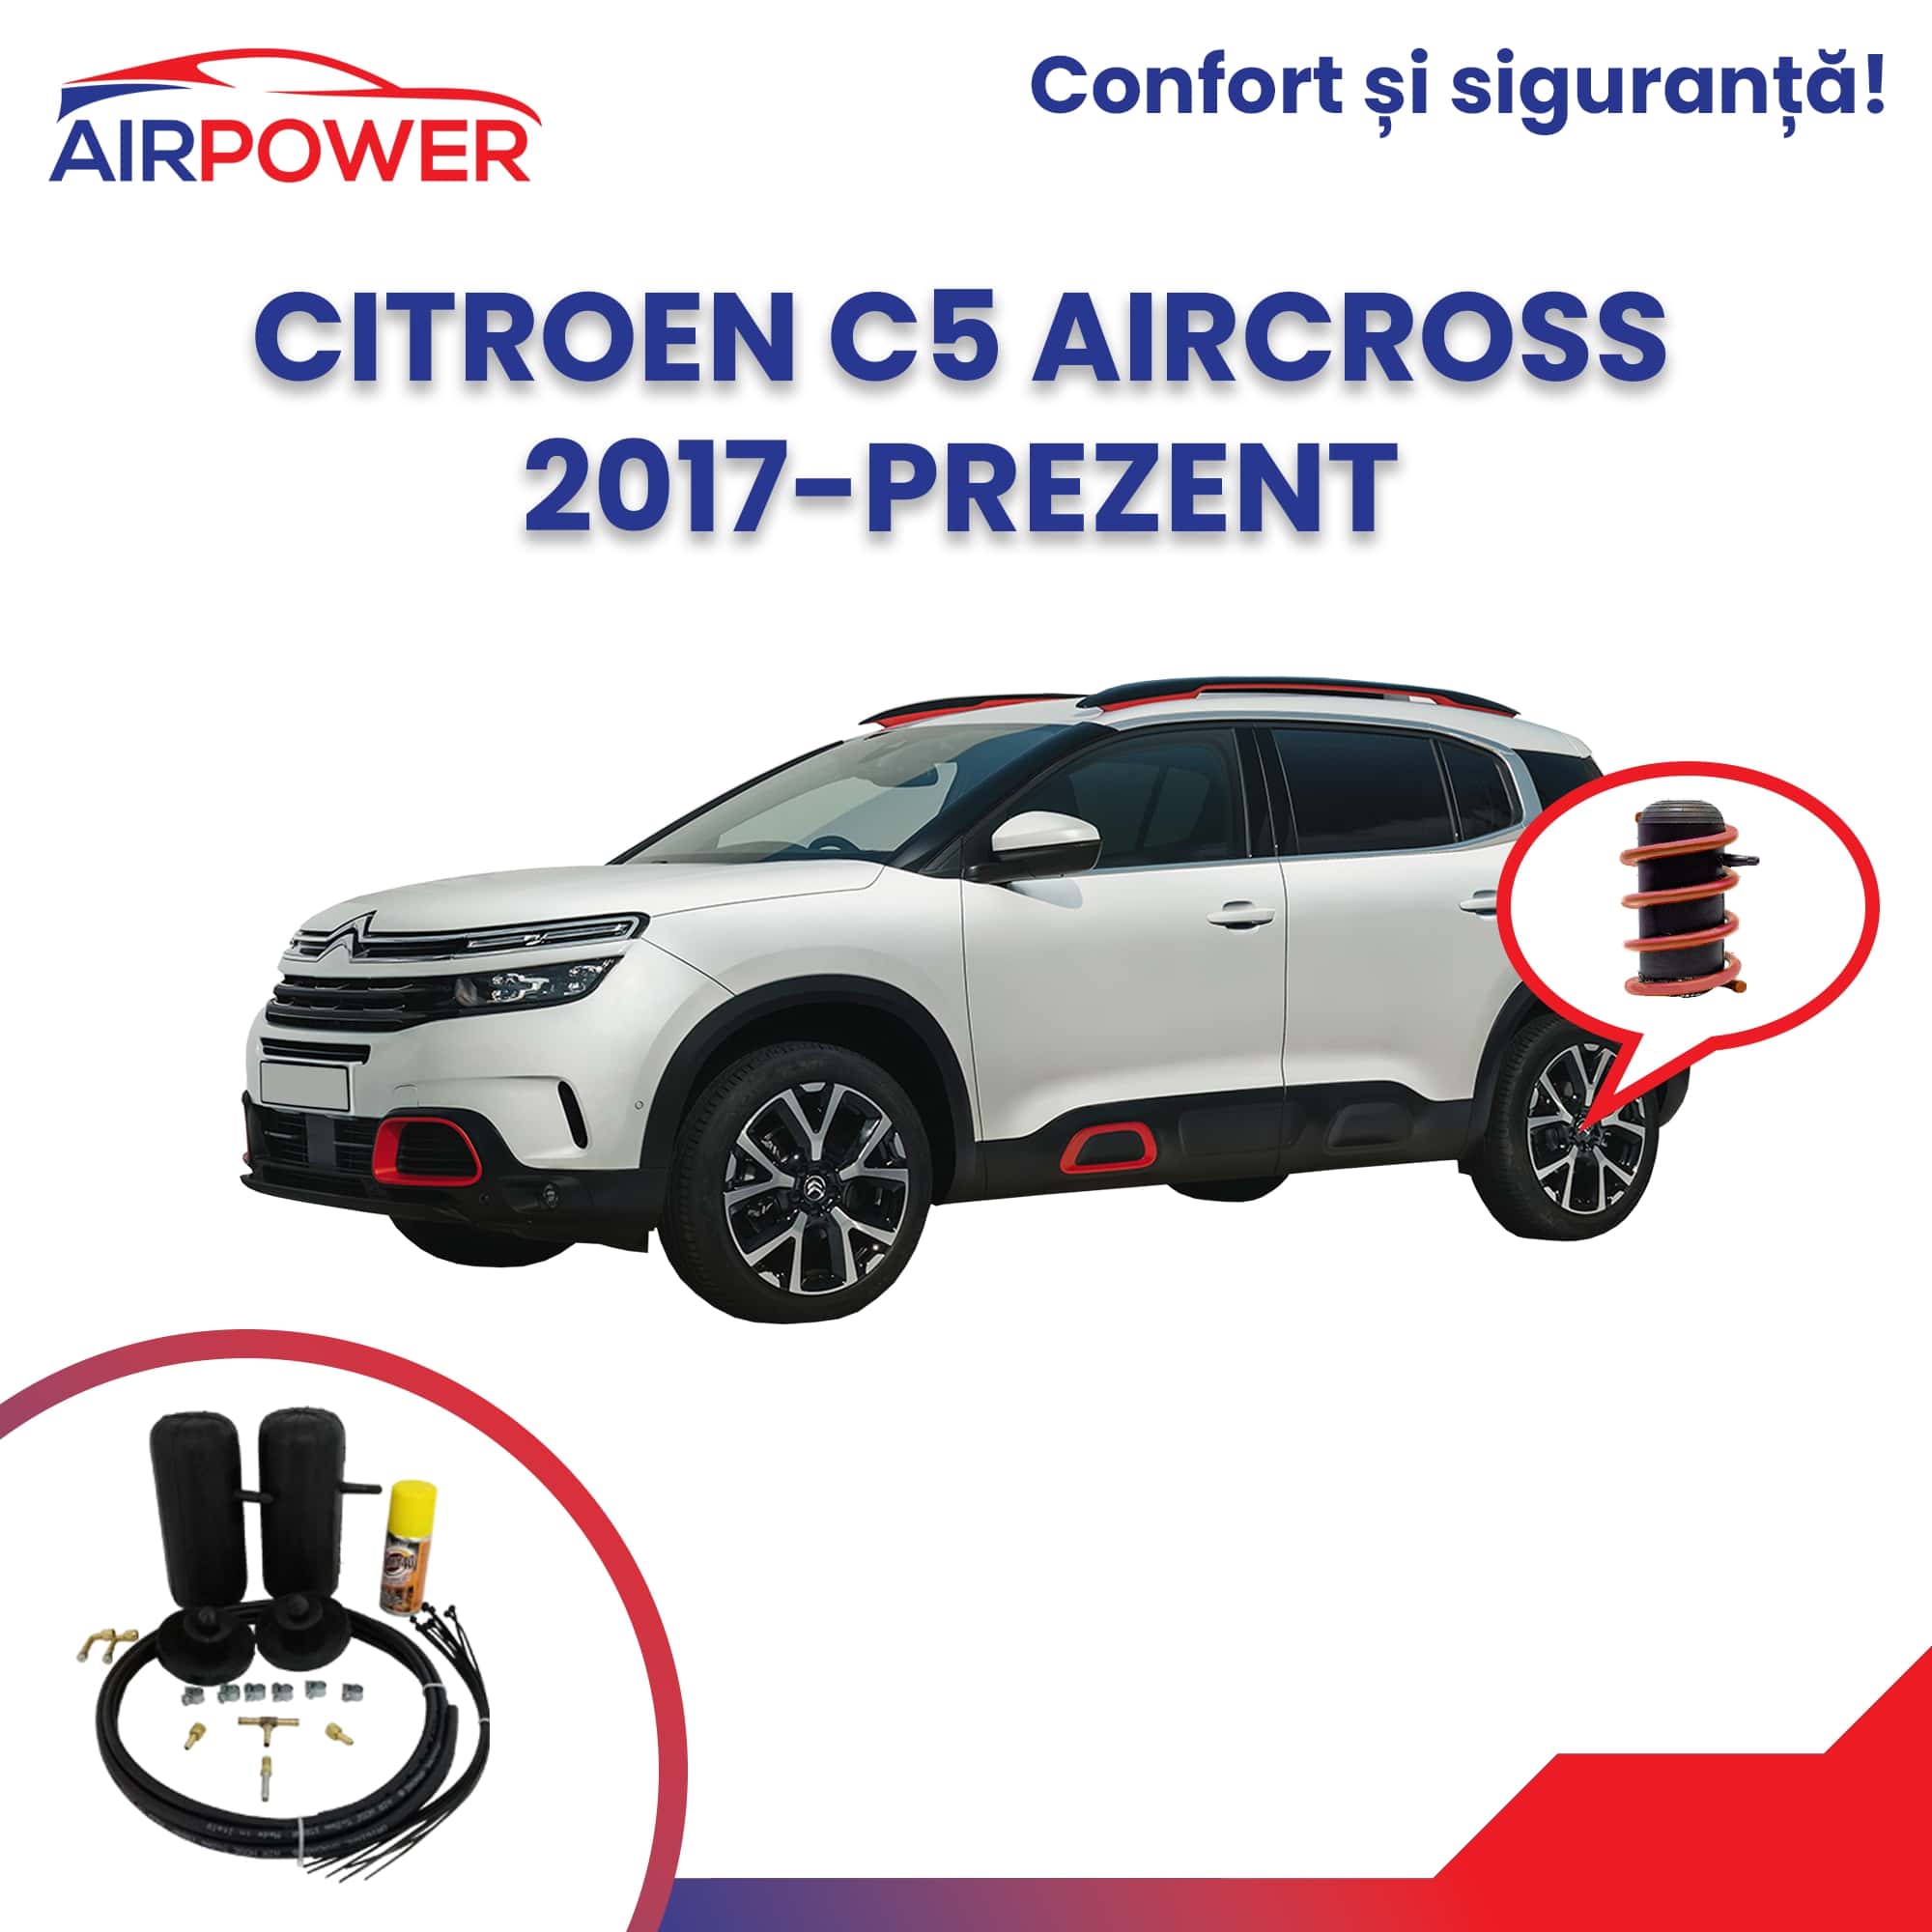 citroen-c5-aircross-2017-prezent-perne-auxiliar